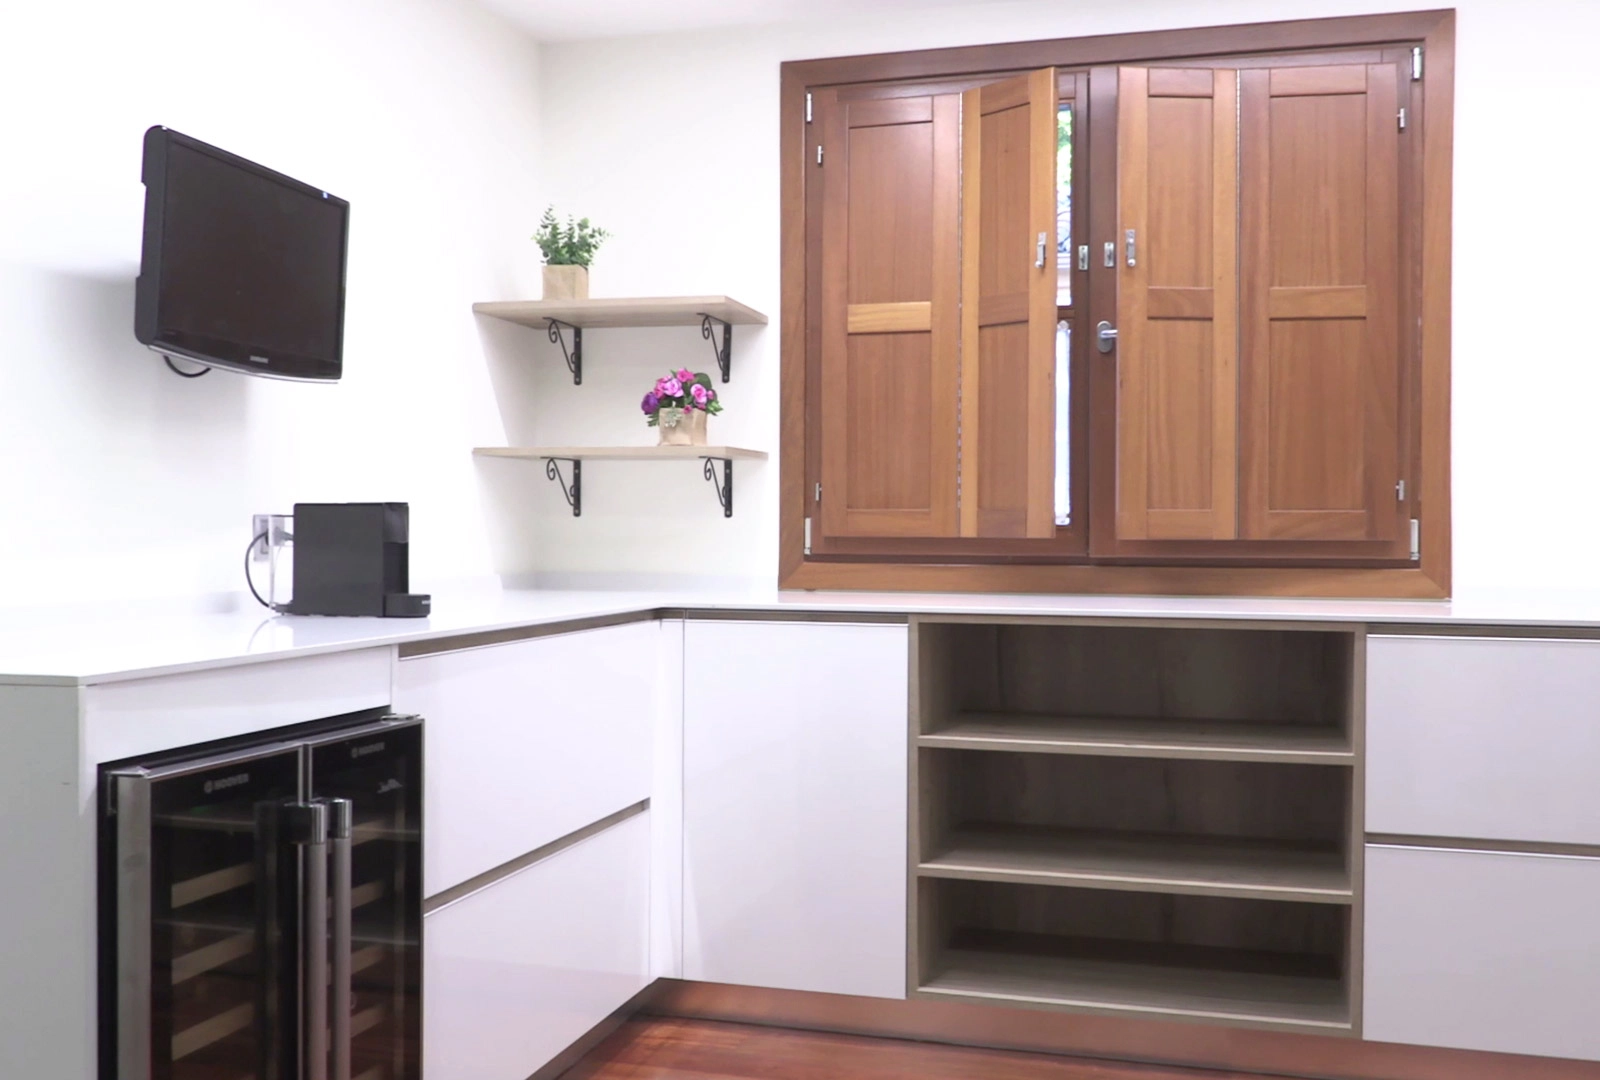 Fotografía de uno de nuestros armarios despenseros abiertos.  Catalogo  muebles de cocina, Muebles de cocina, Catalogo cocinas